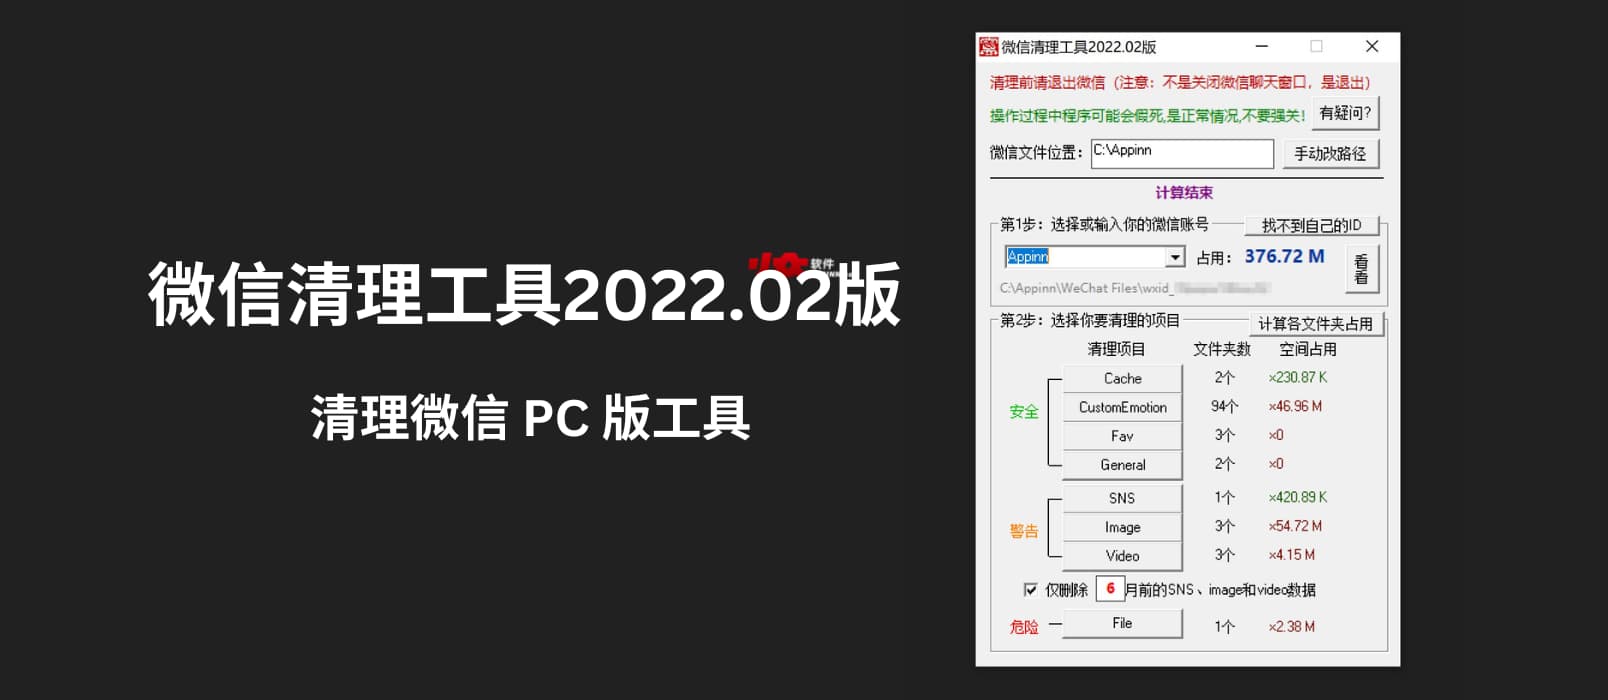 微信清理工具2022.02版 - 专门用来清理微信 PC 版磁盘占用工具